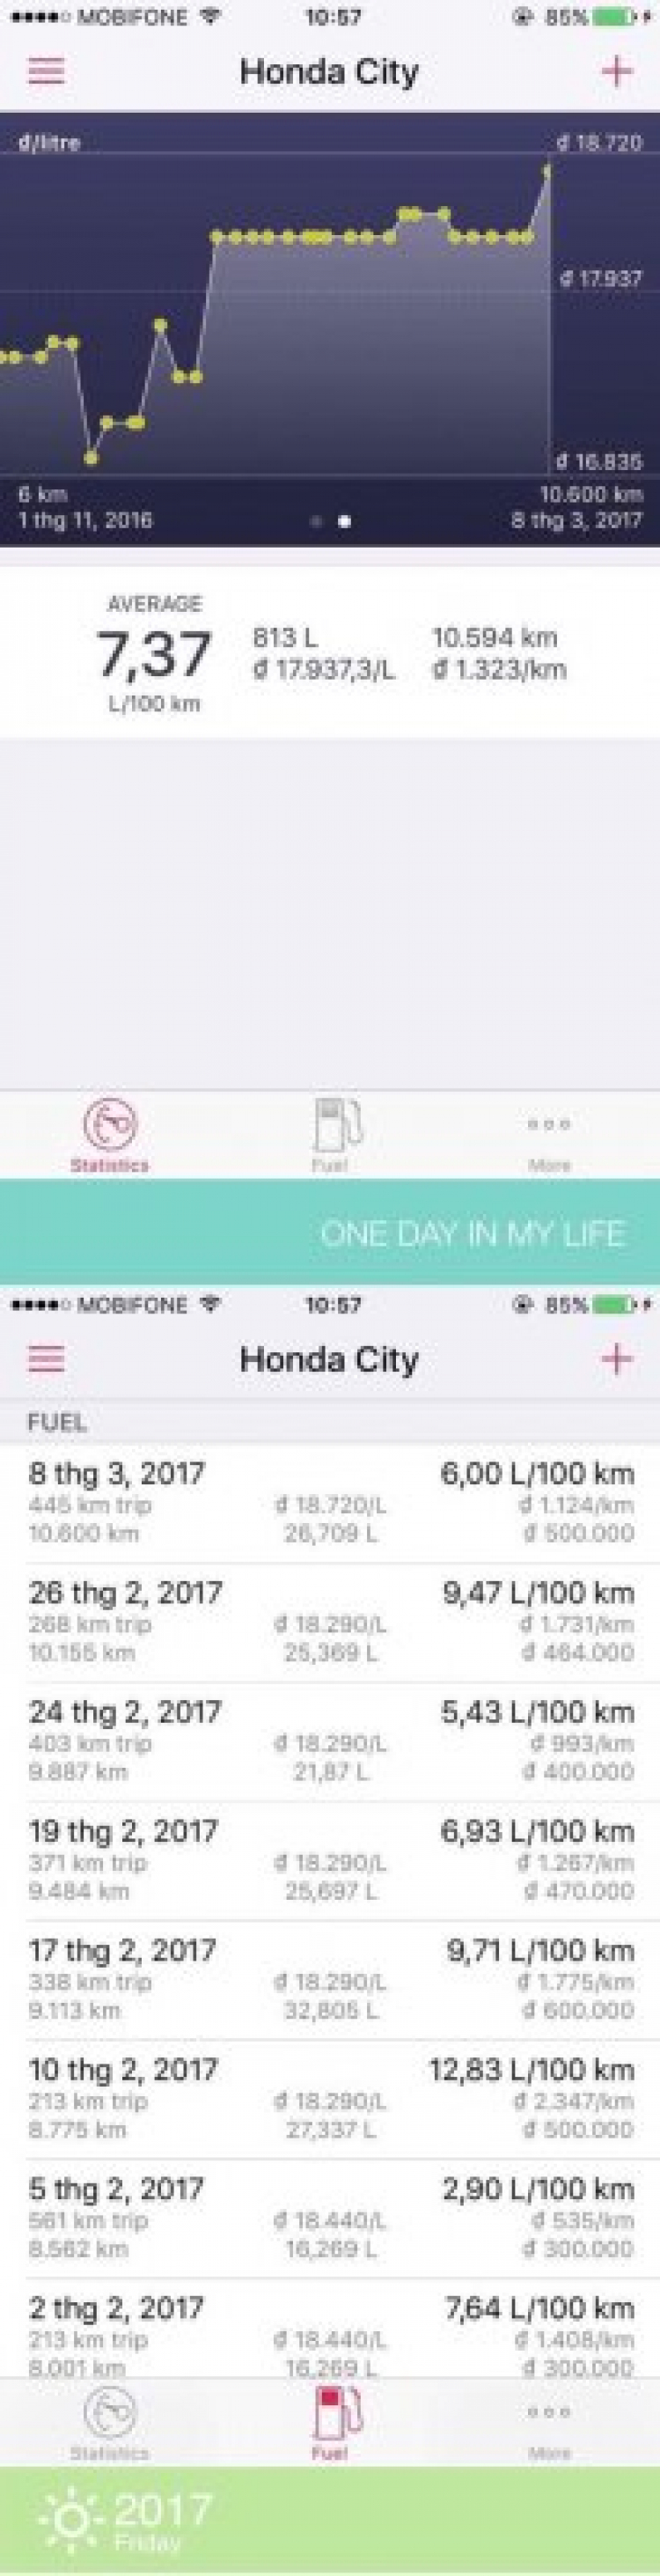 Đánh giá Honda City sau 10.000 km